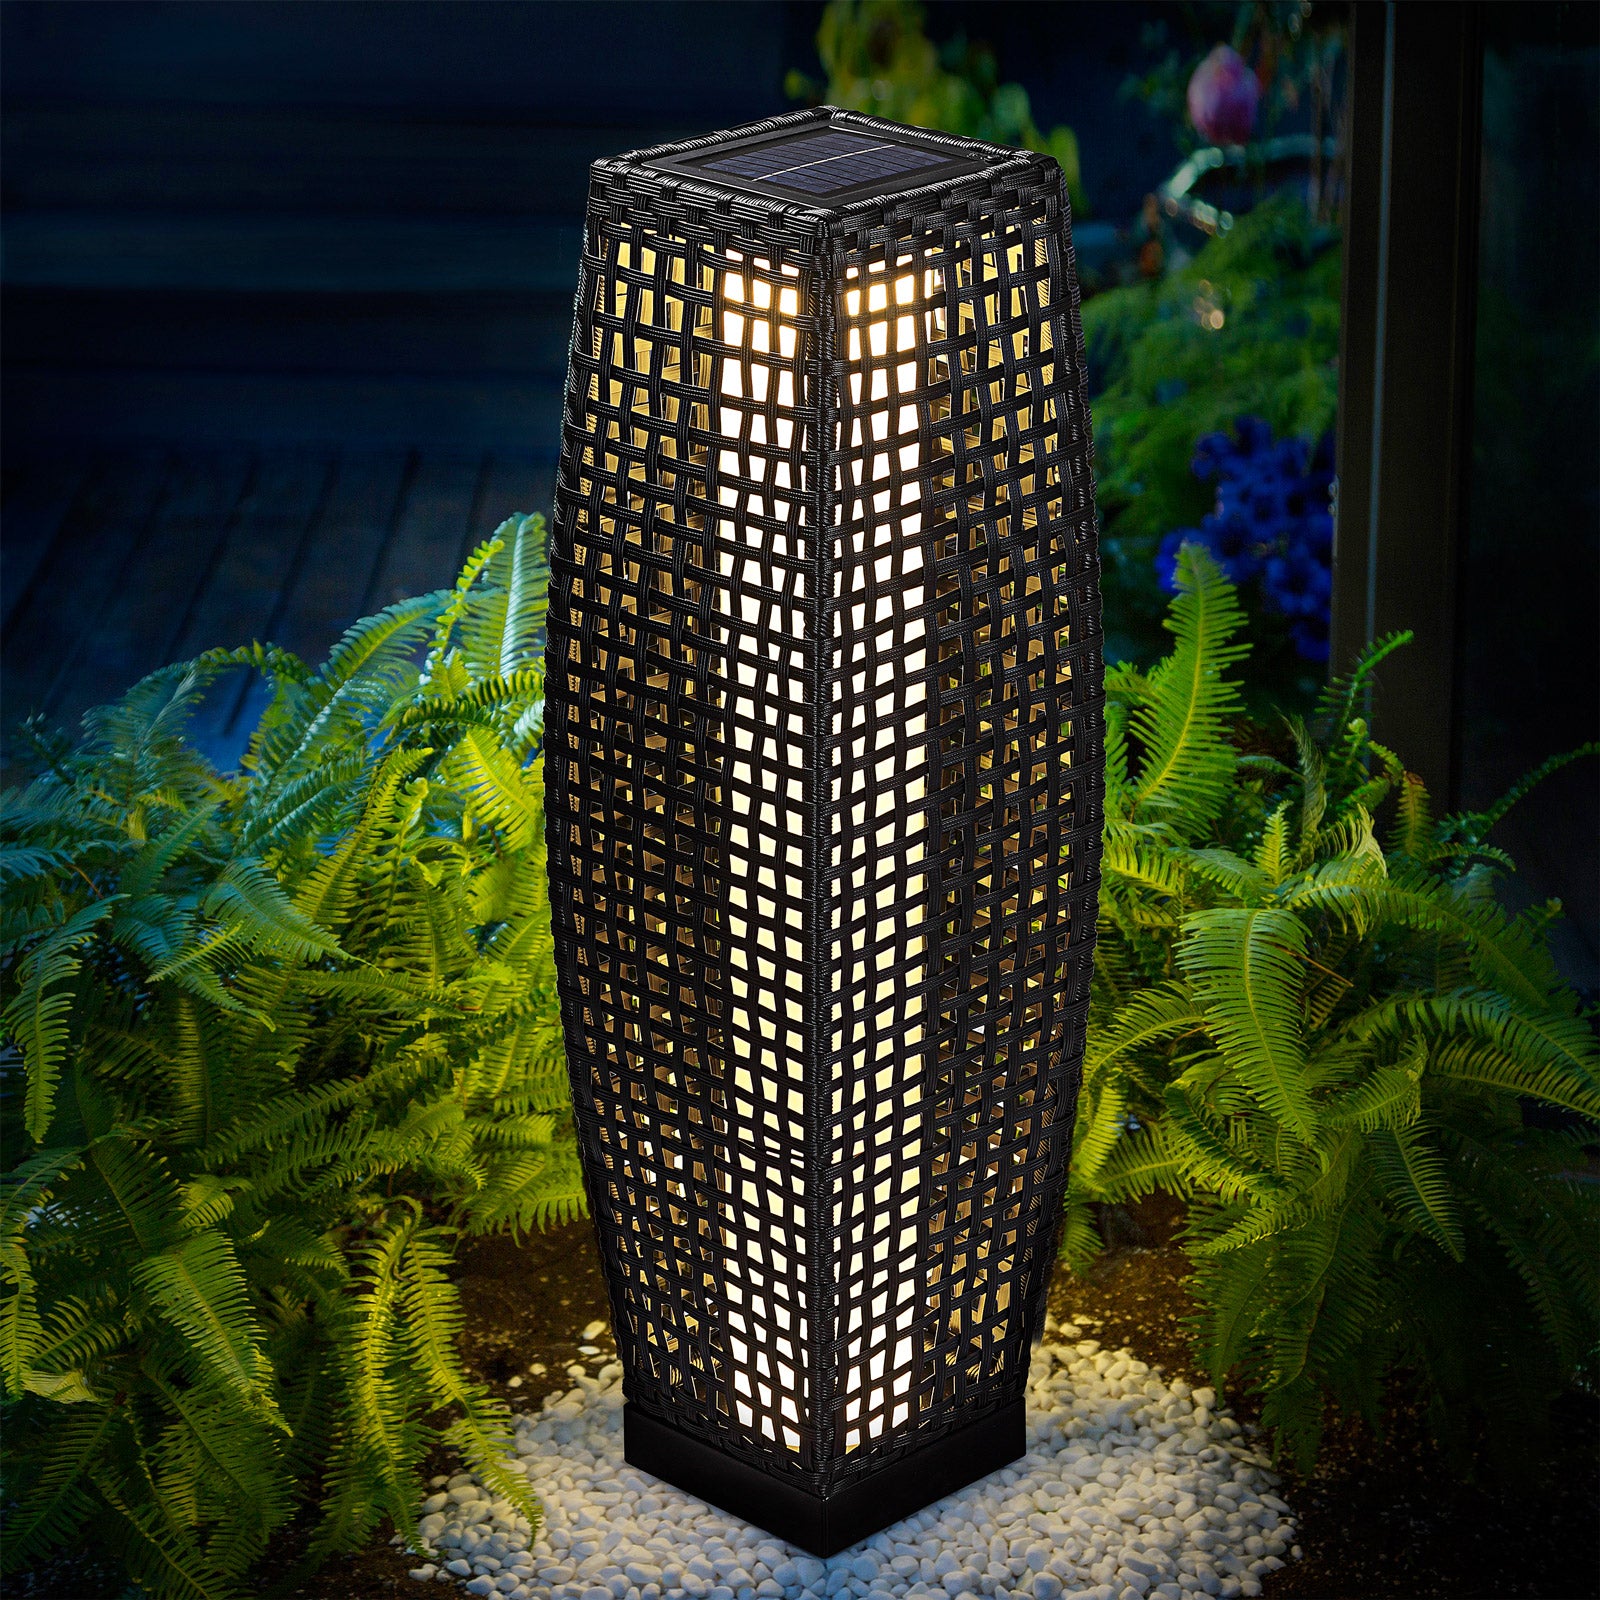 Lampe de jardin Nancy's Mount Carmel_V3 - Lampadaire - Lampe sur pied - Éclairage - Énergie solaire - Lampe LED - 50 x 18 x 18 cm